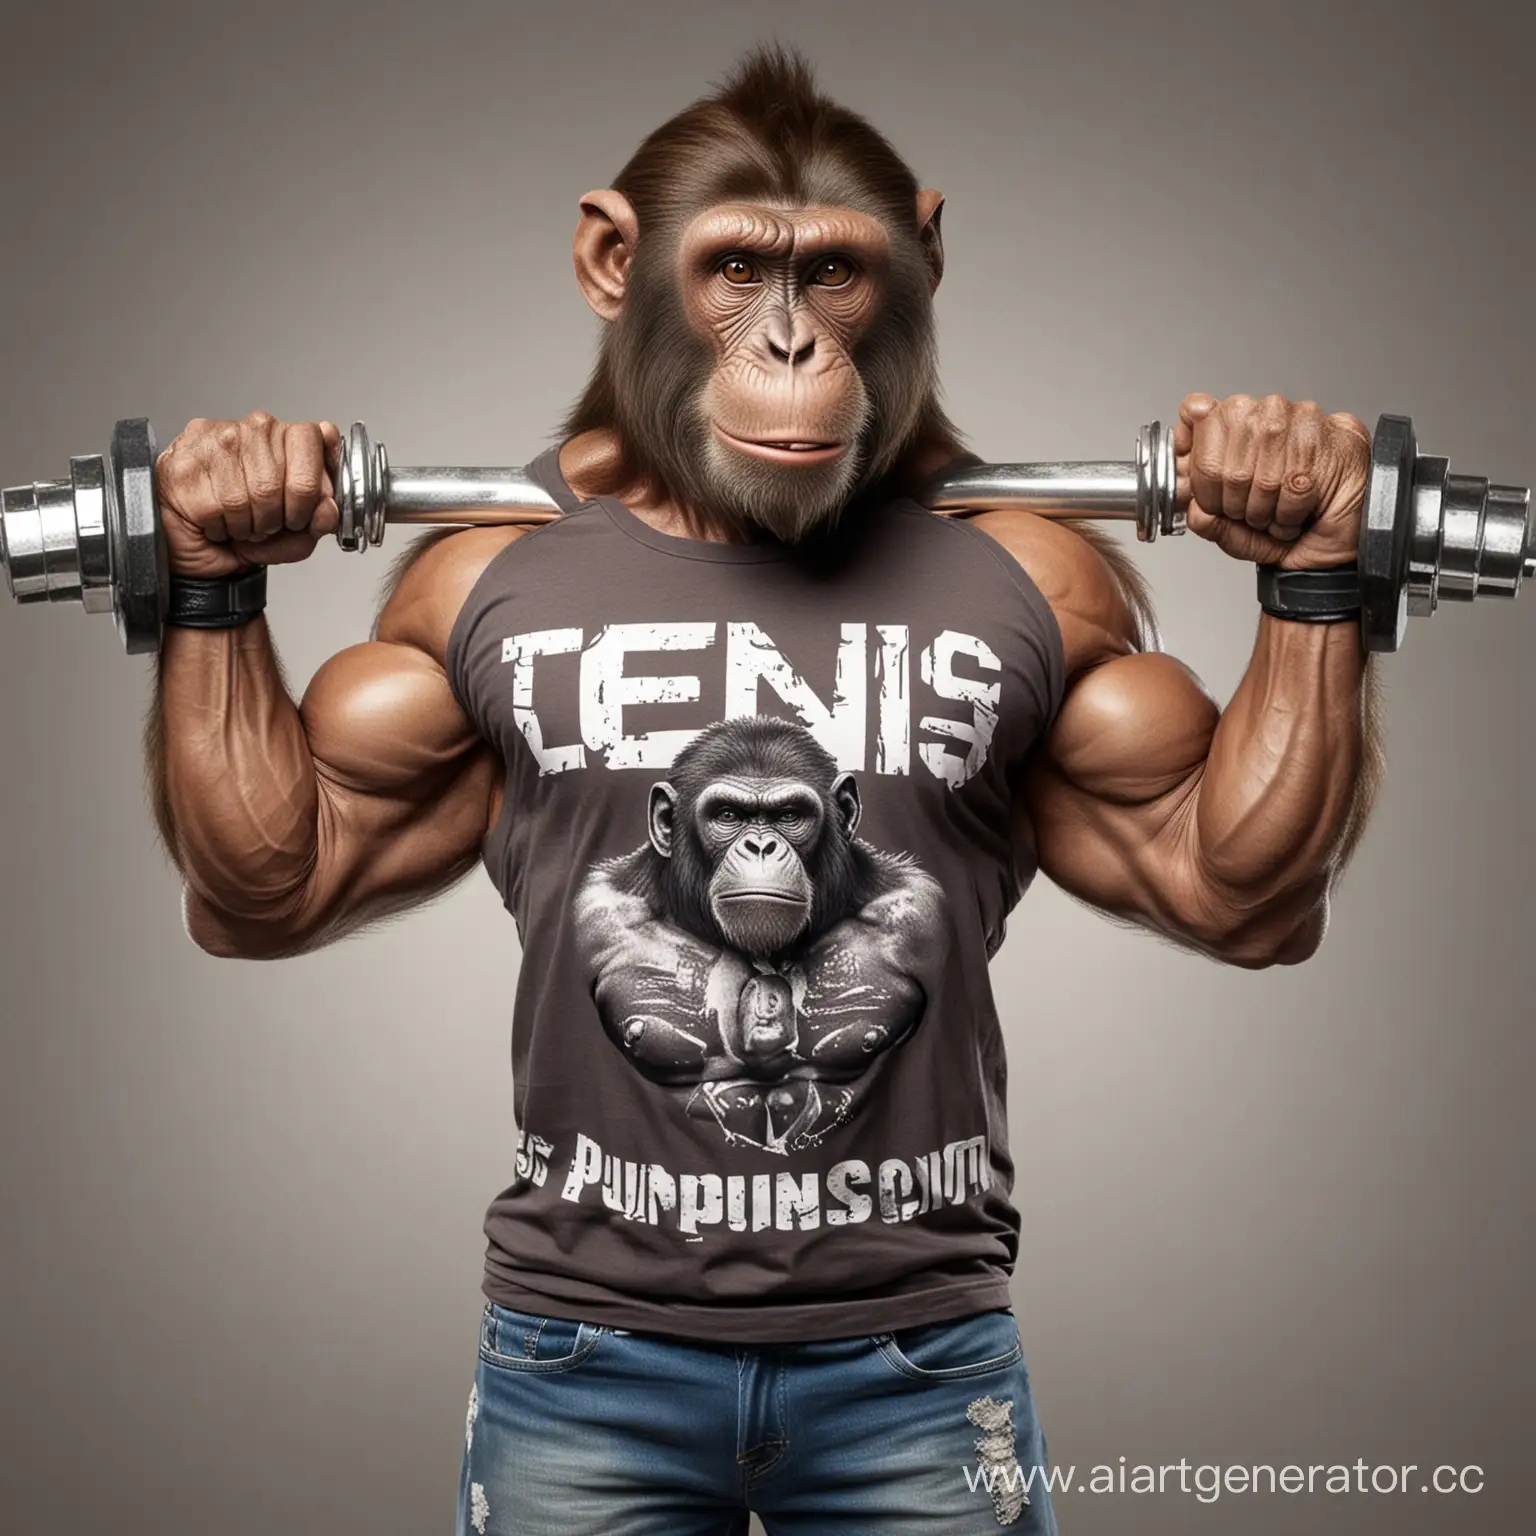 огромная обезьяна бодибилдер в футболке с надписью denis качаеться 
